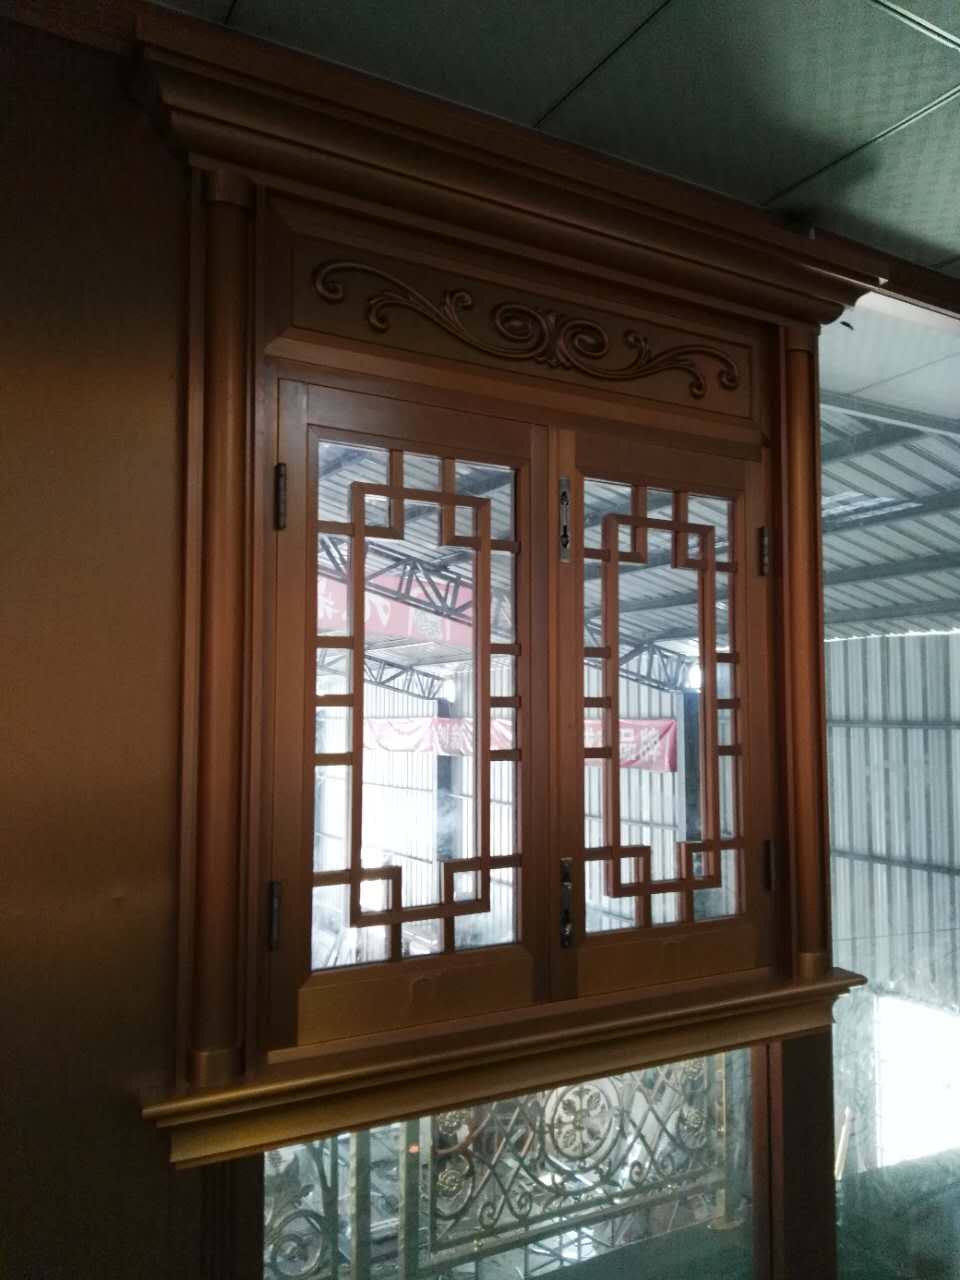 深圳铜窗定制厂家出售、供应铜窗厂家直销、铜窗供货商